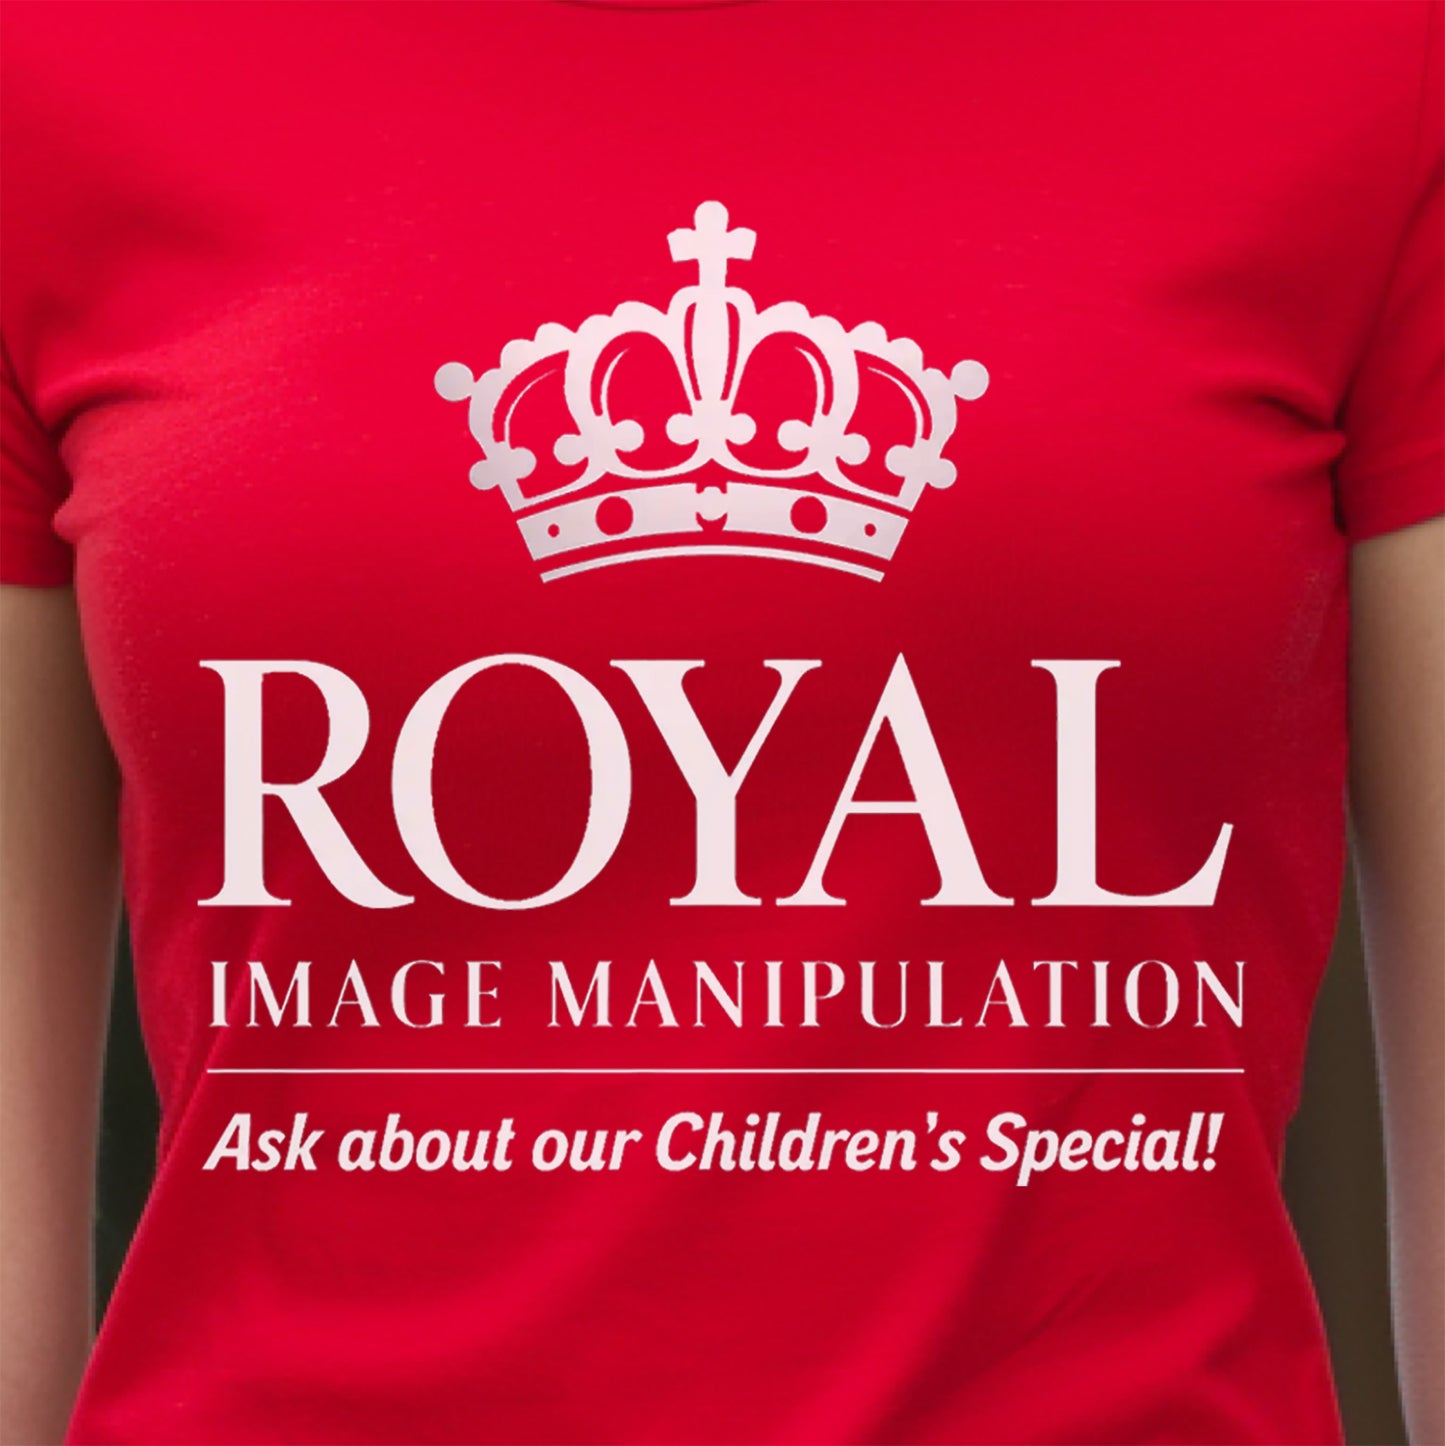 Royal Image Manipulation T-Shirt, Funny Royal Image Manipulation, Manipulate Royal Images, Funny Royal Children Image Manipulation T-Shirt